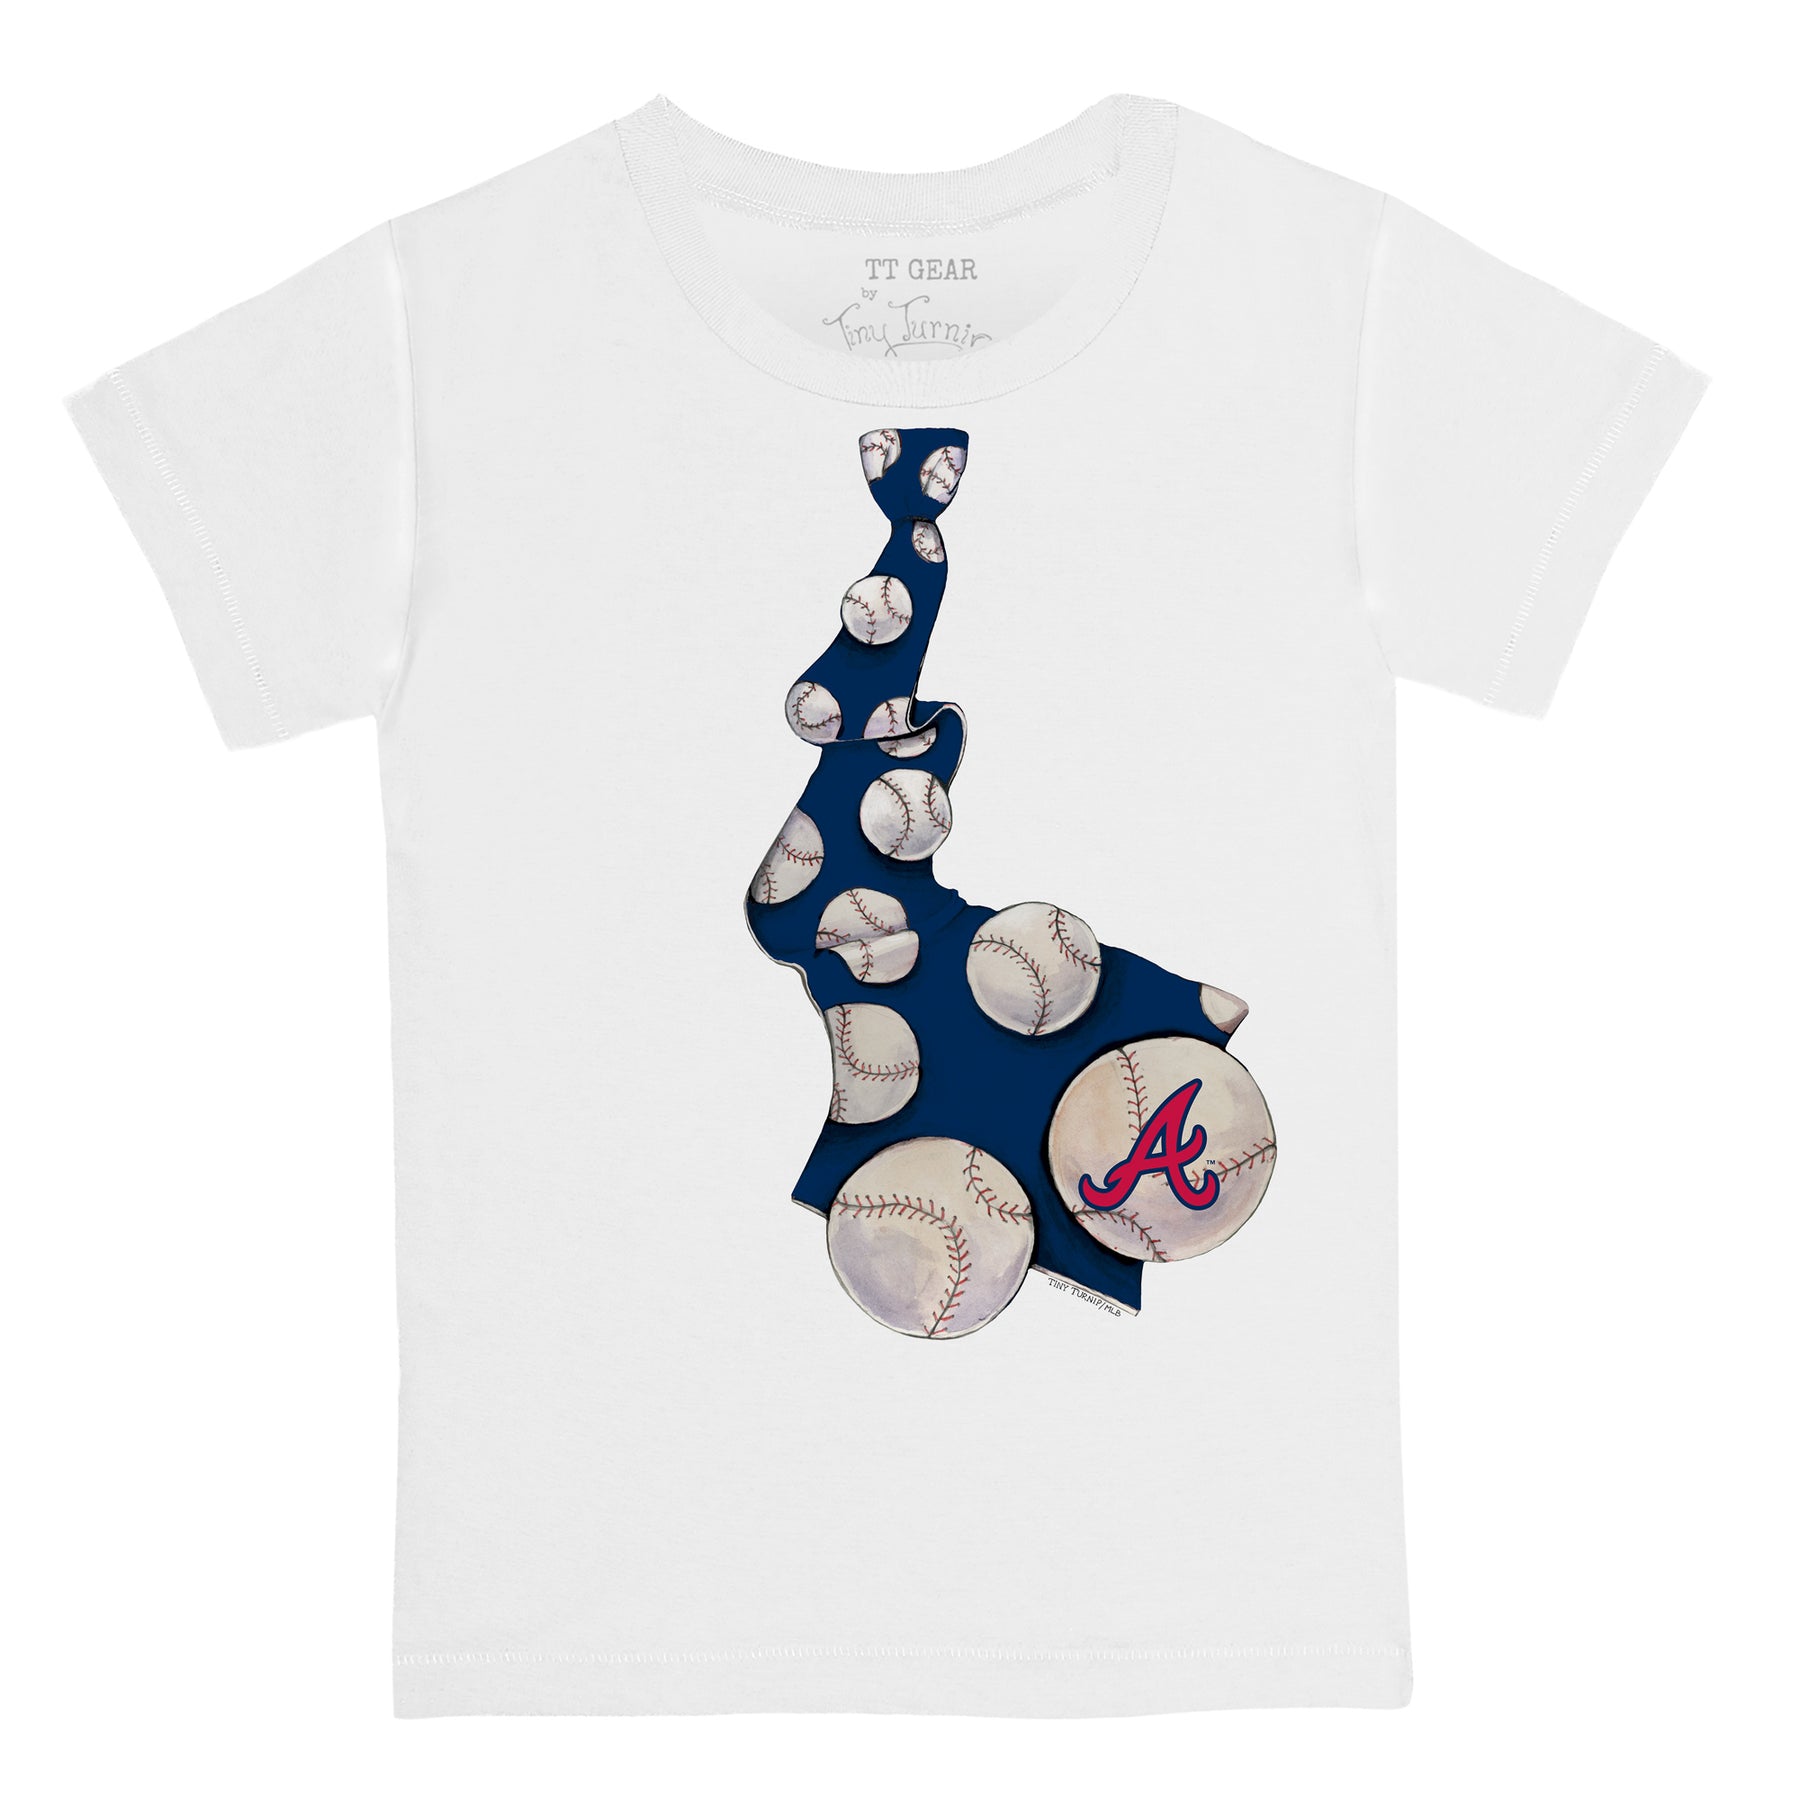 MLB Atlanta Braves Women's Short Sleeve V-Neck T-Shirt - XXL